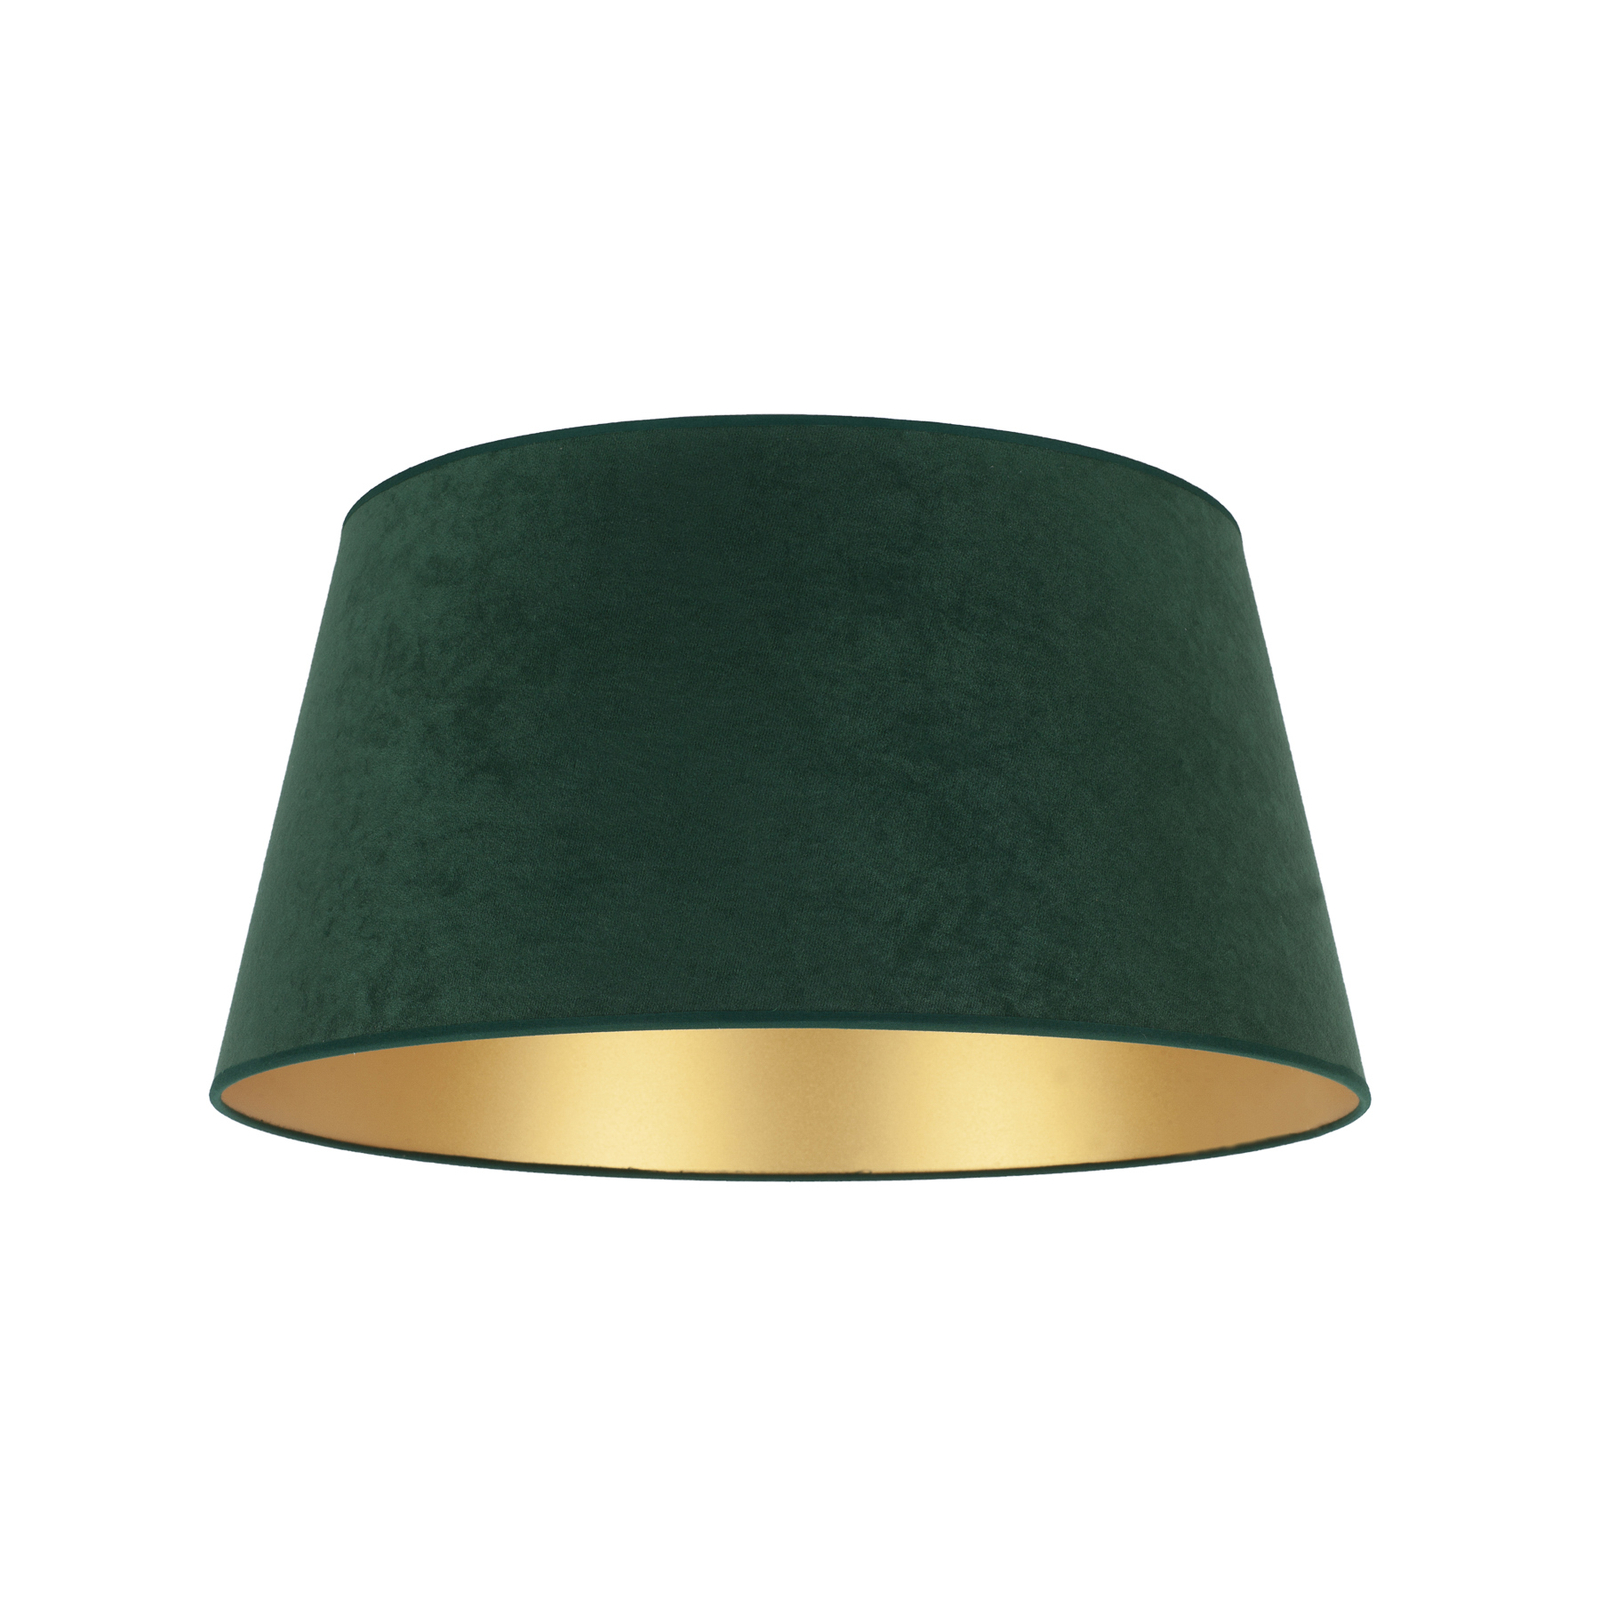 Lampeskjerm Cone høyde 22,5 cm, mørkegrønn/gull